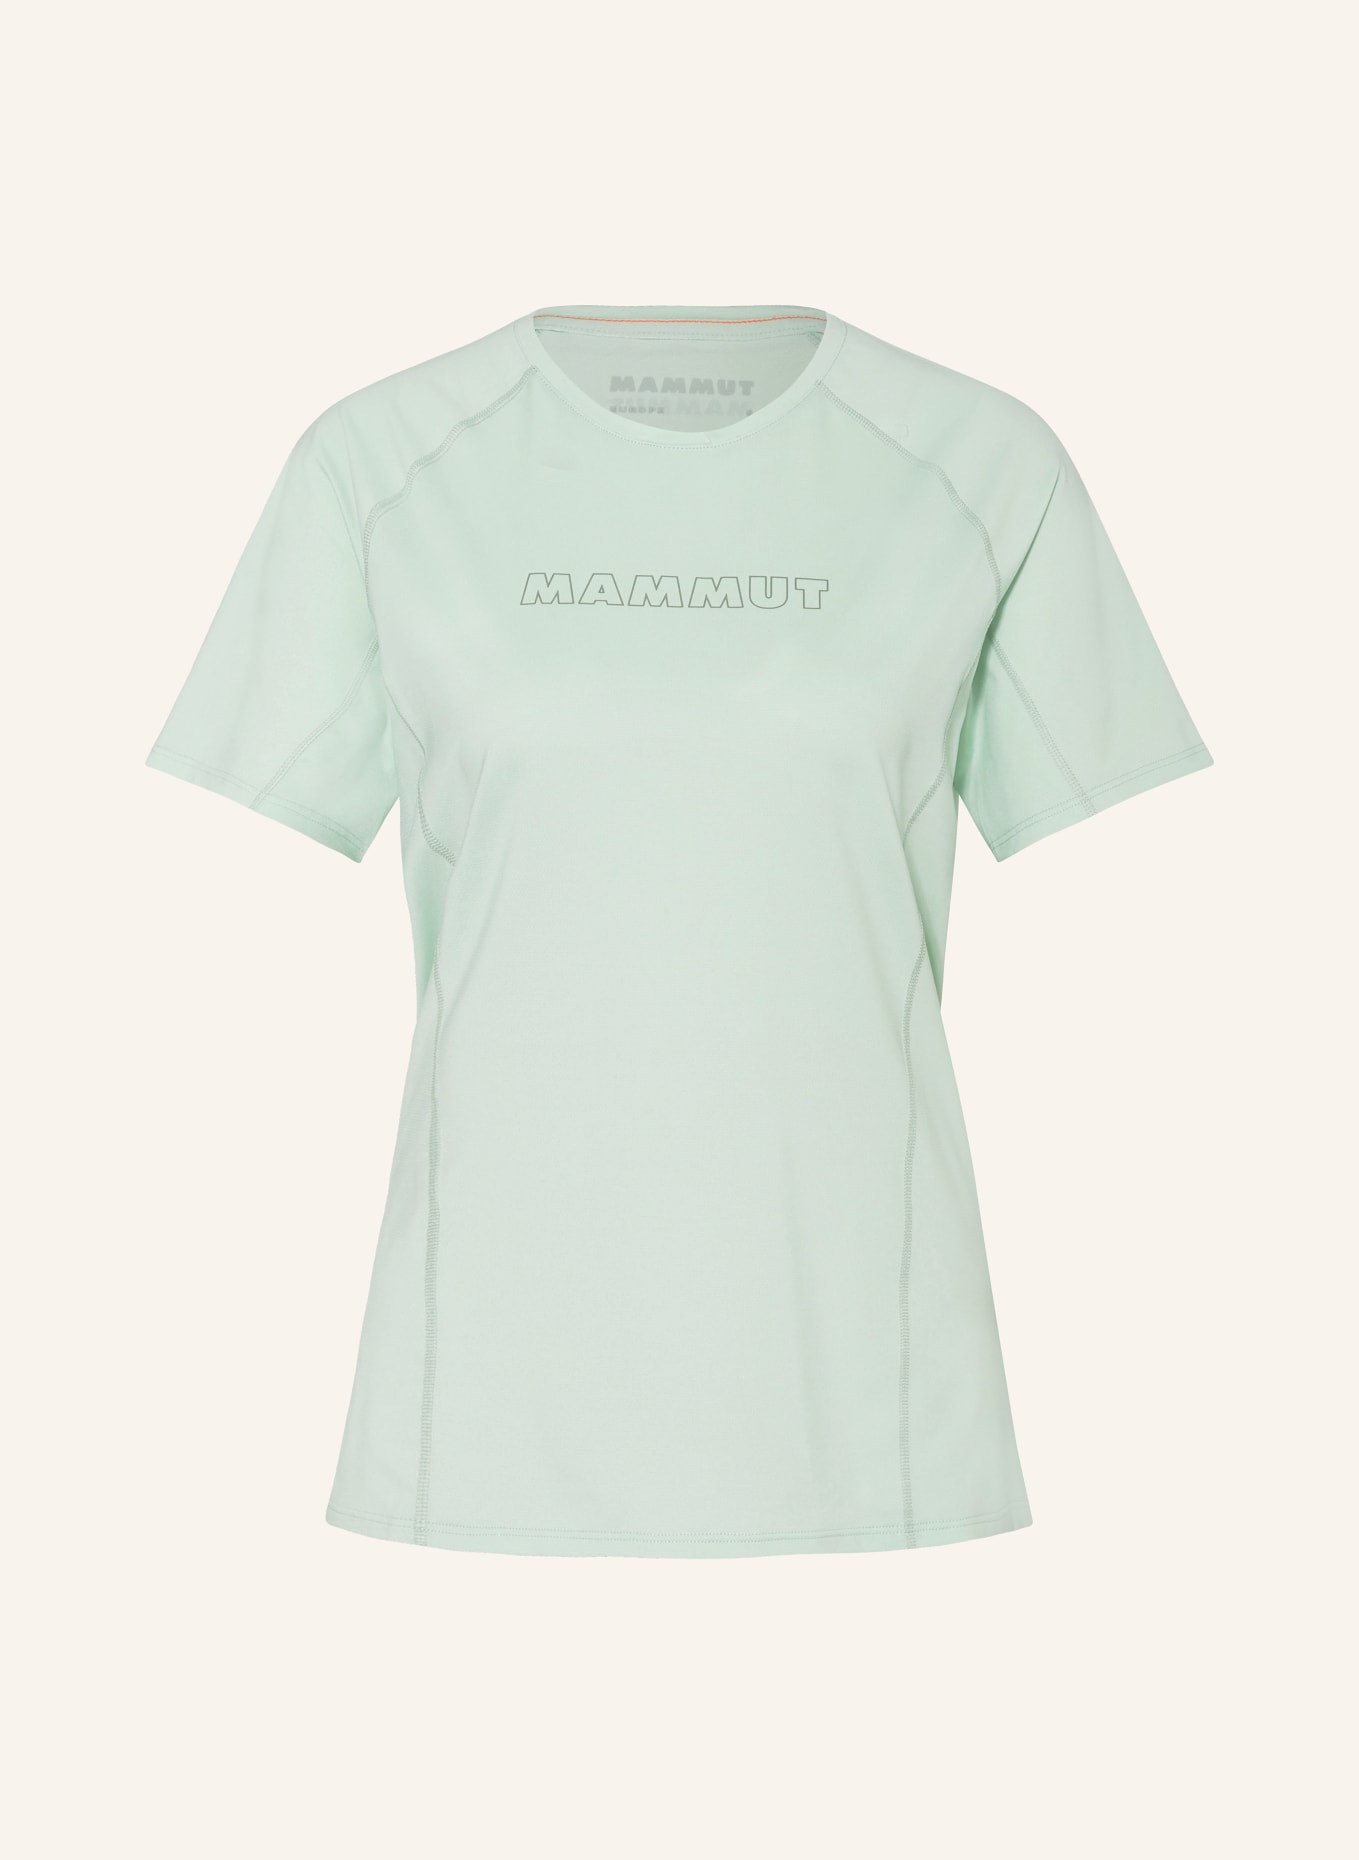 MAMMUT T-shirt SELUN, Color: MINT (Image 1)